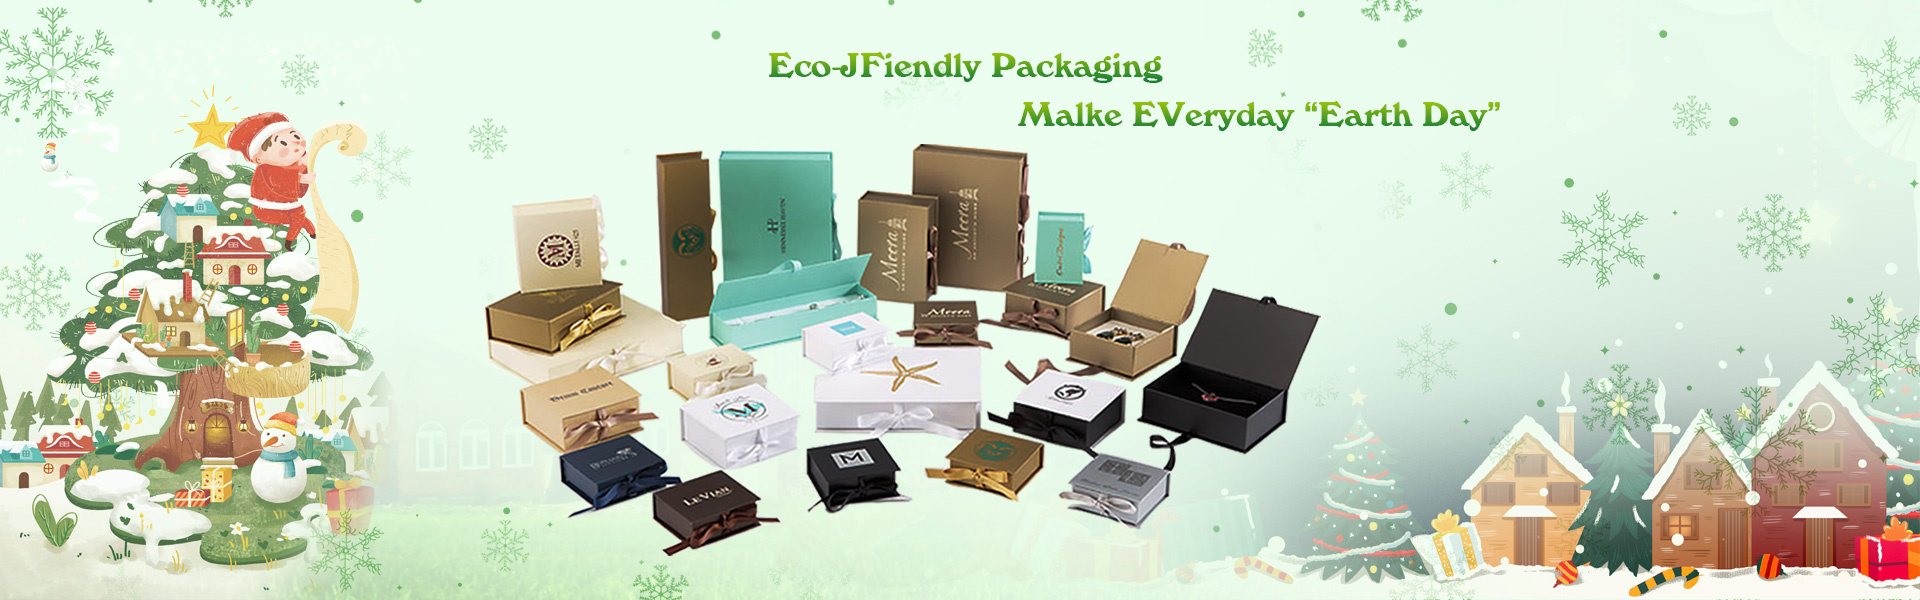 ギフトボックス、梱包箱、ラベル,Dongguan chengyuan packaging products Co,.Ltd